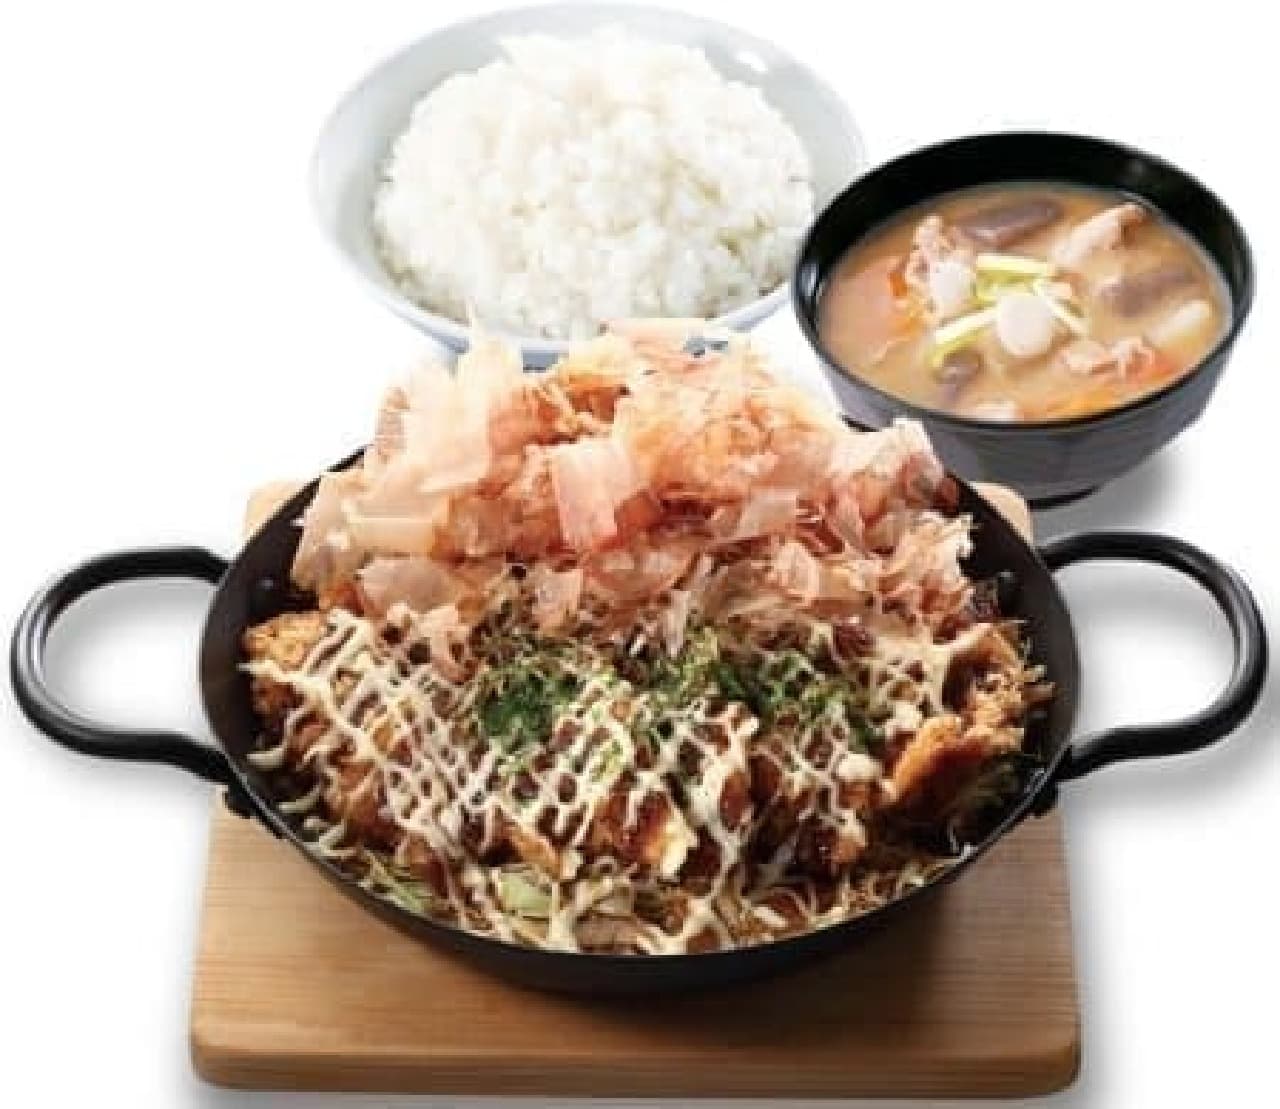 It looks like okonomiyaki!